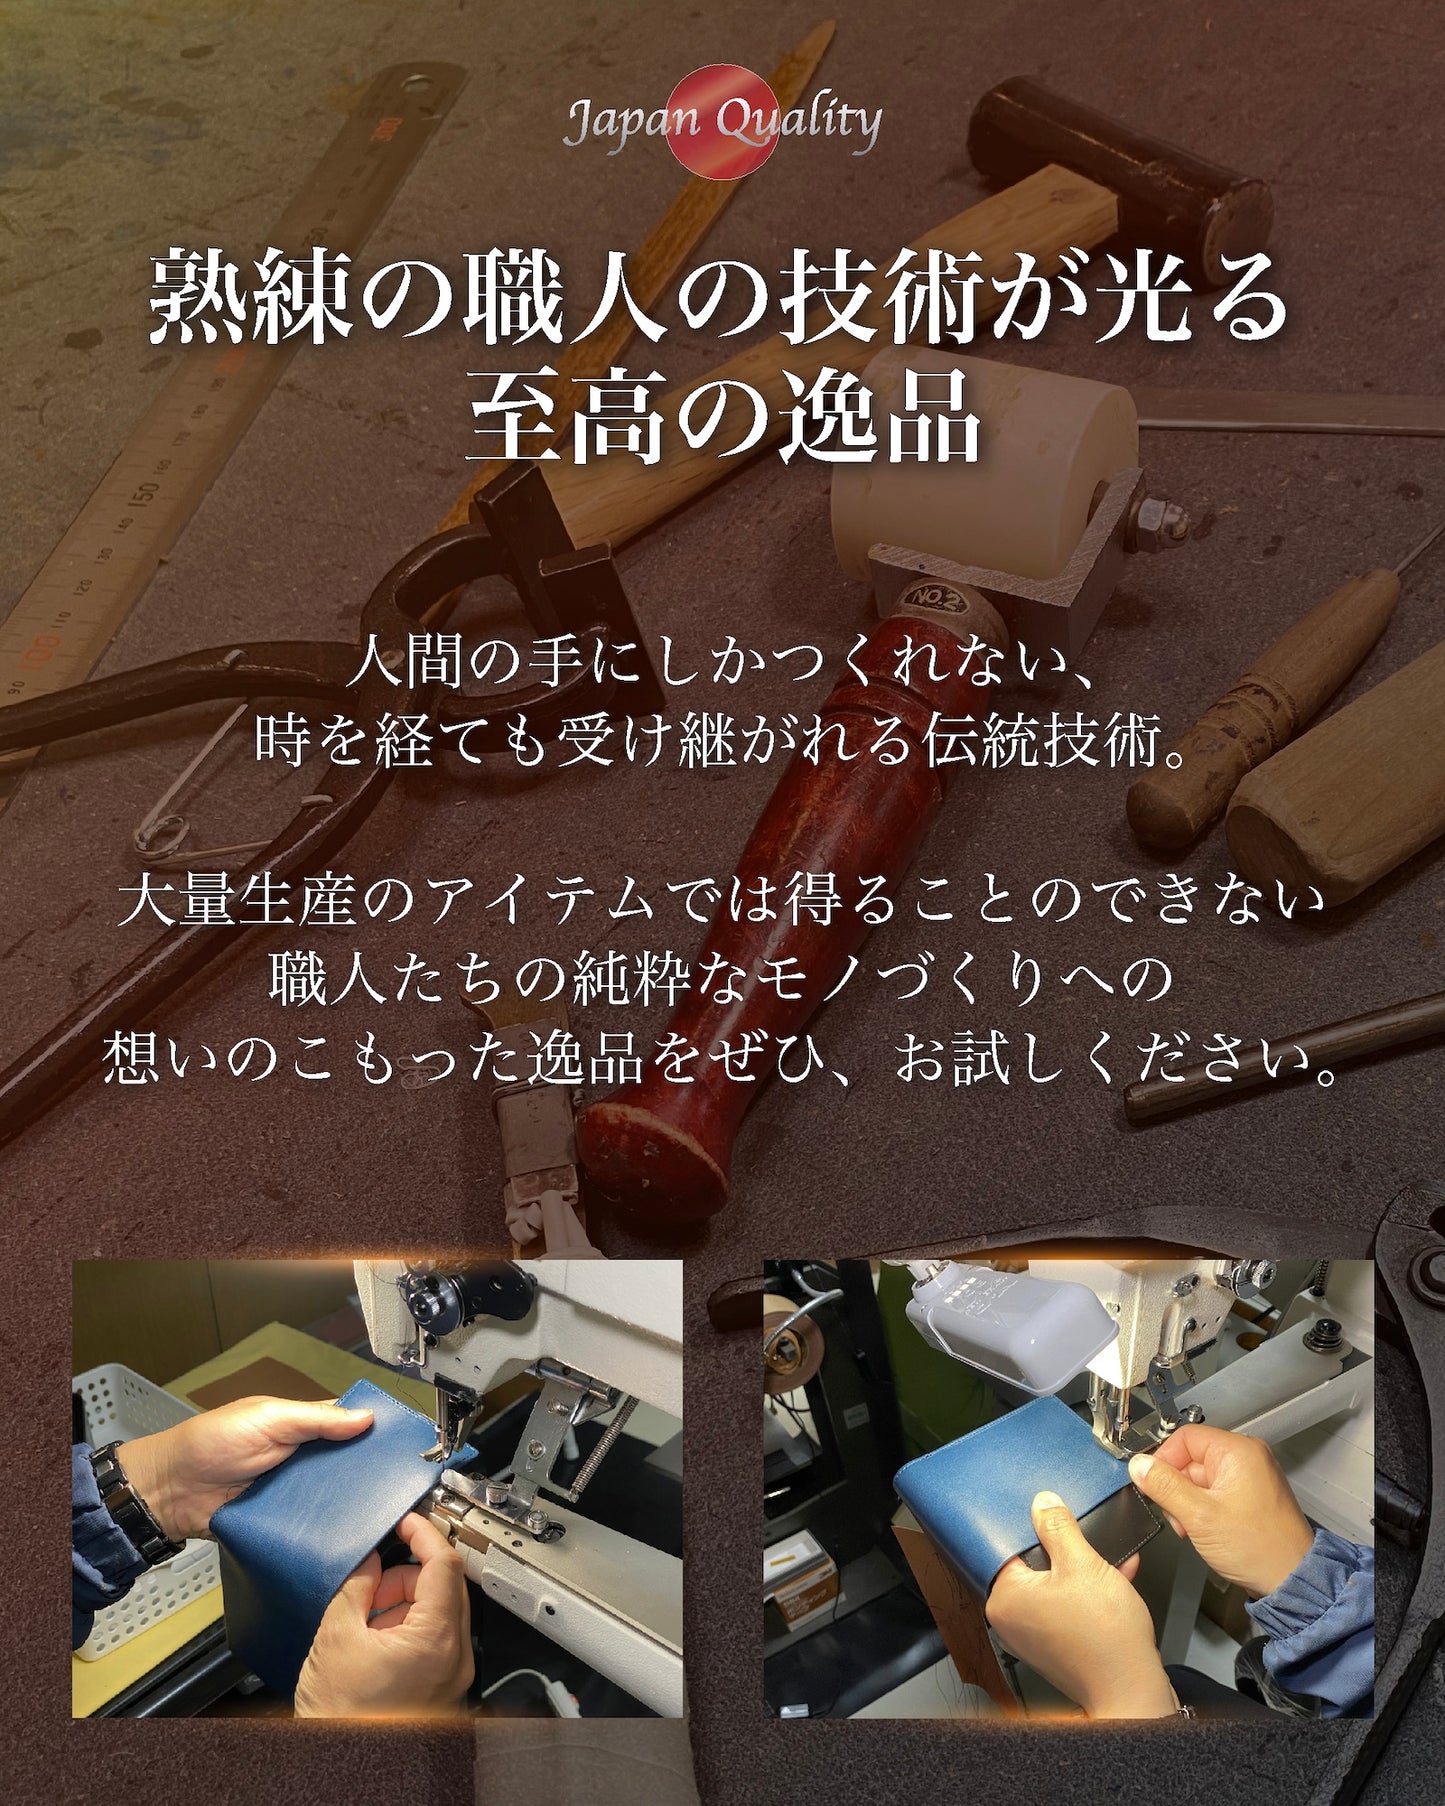 Eredita(エレディータ) ブライドルレザー 二つ折り財布 メンズ 外側小銭入れ 日本製 WL26